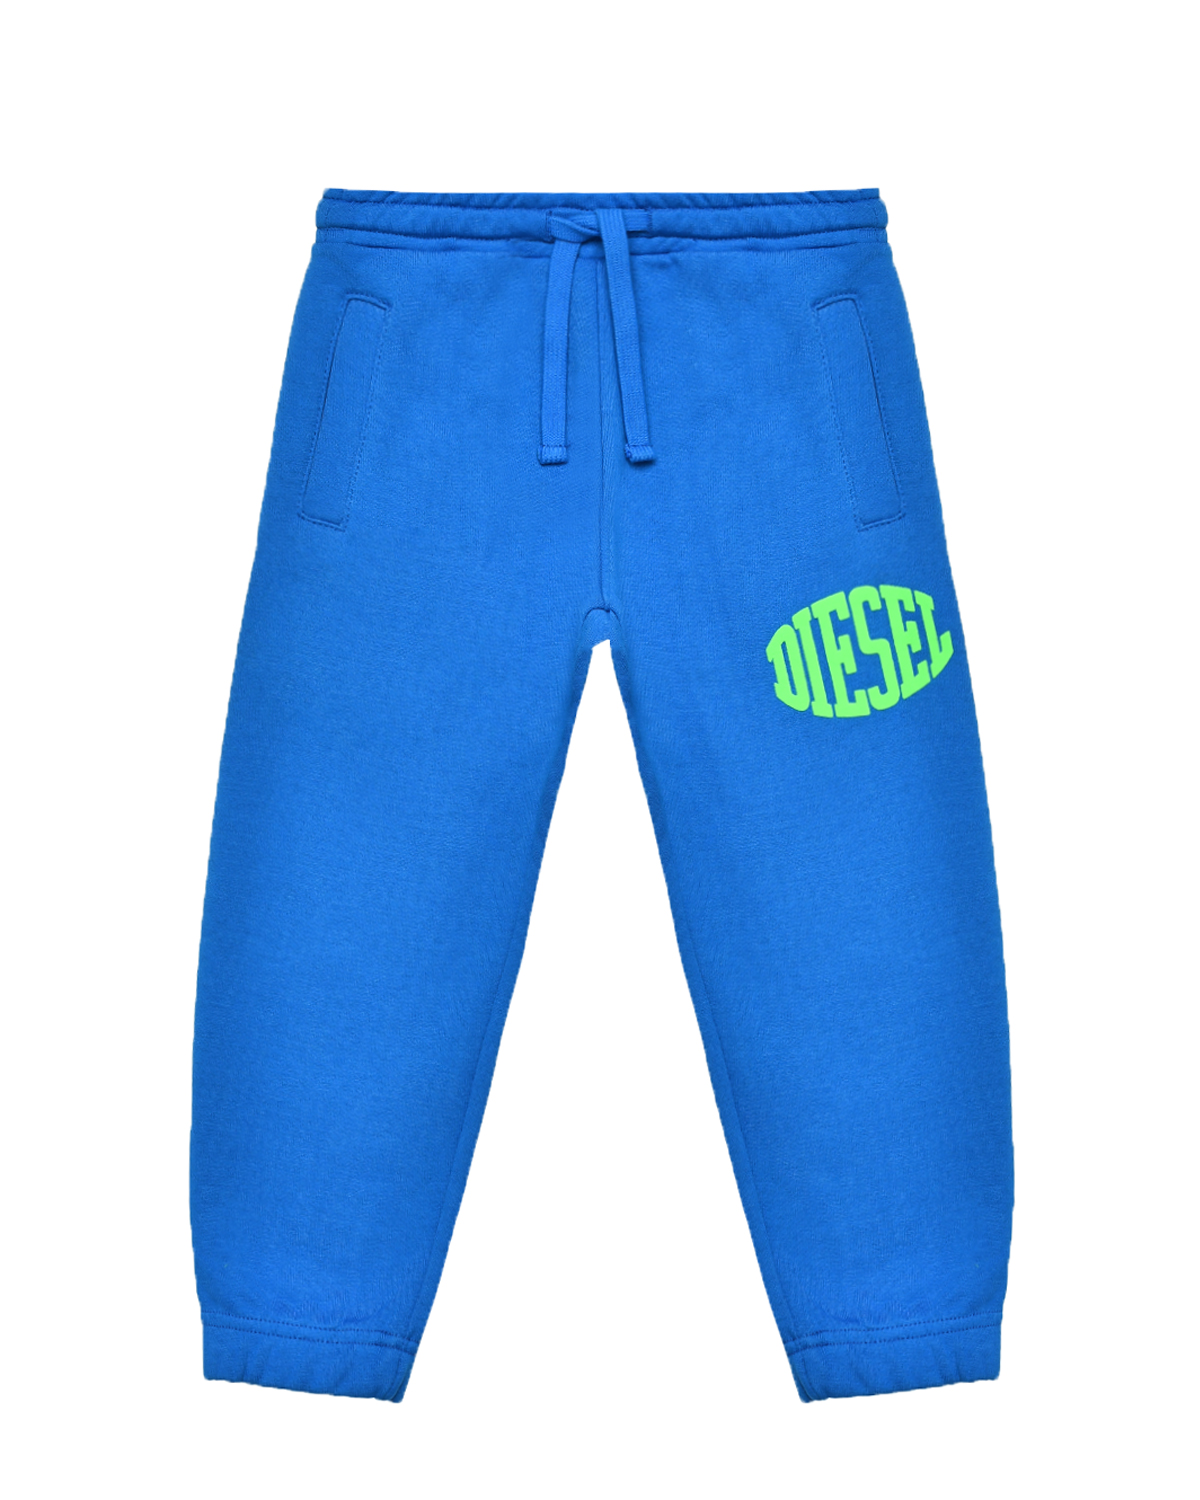 Спортивные брюки с поясом на резинке Diesel, размер 152, цвет синий - фото 1